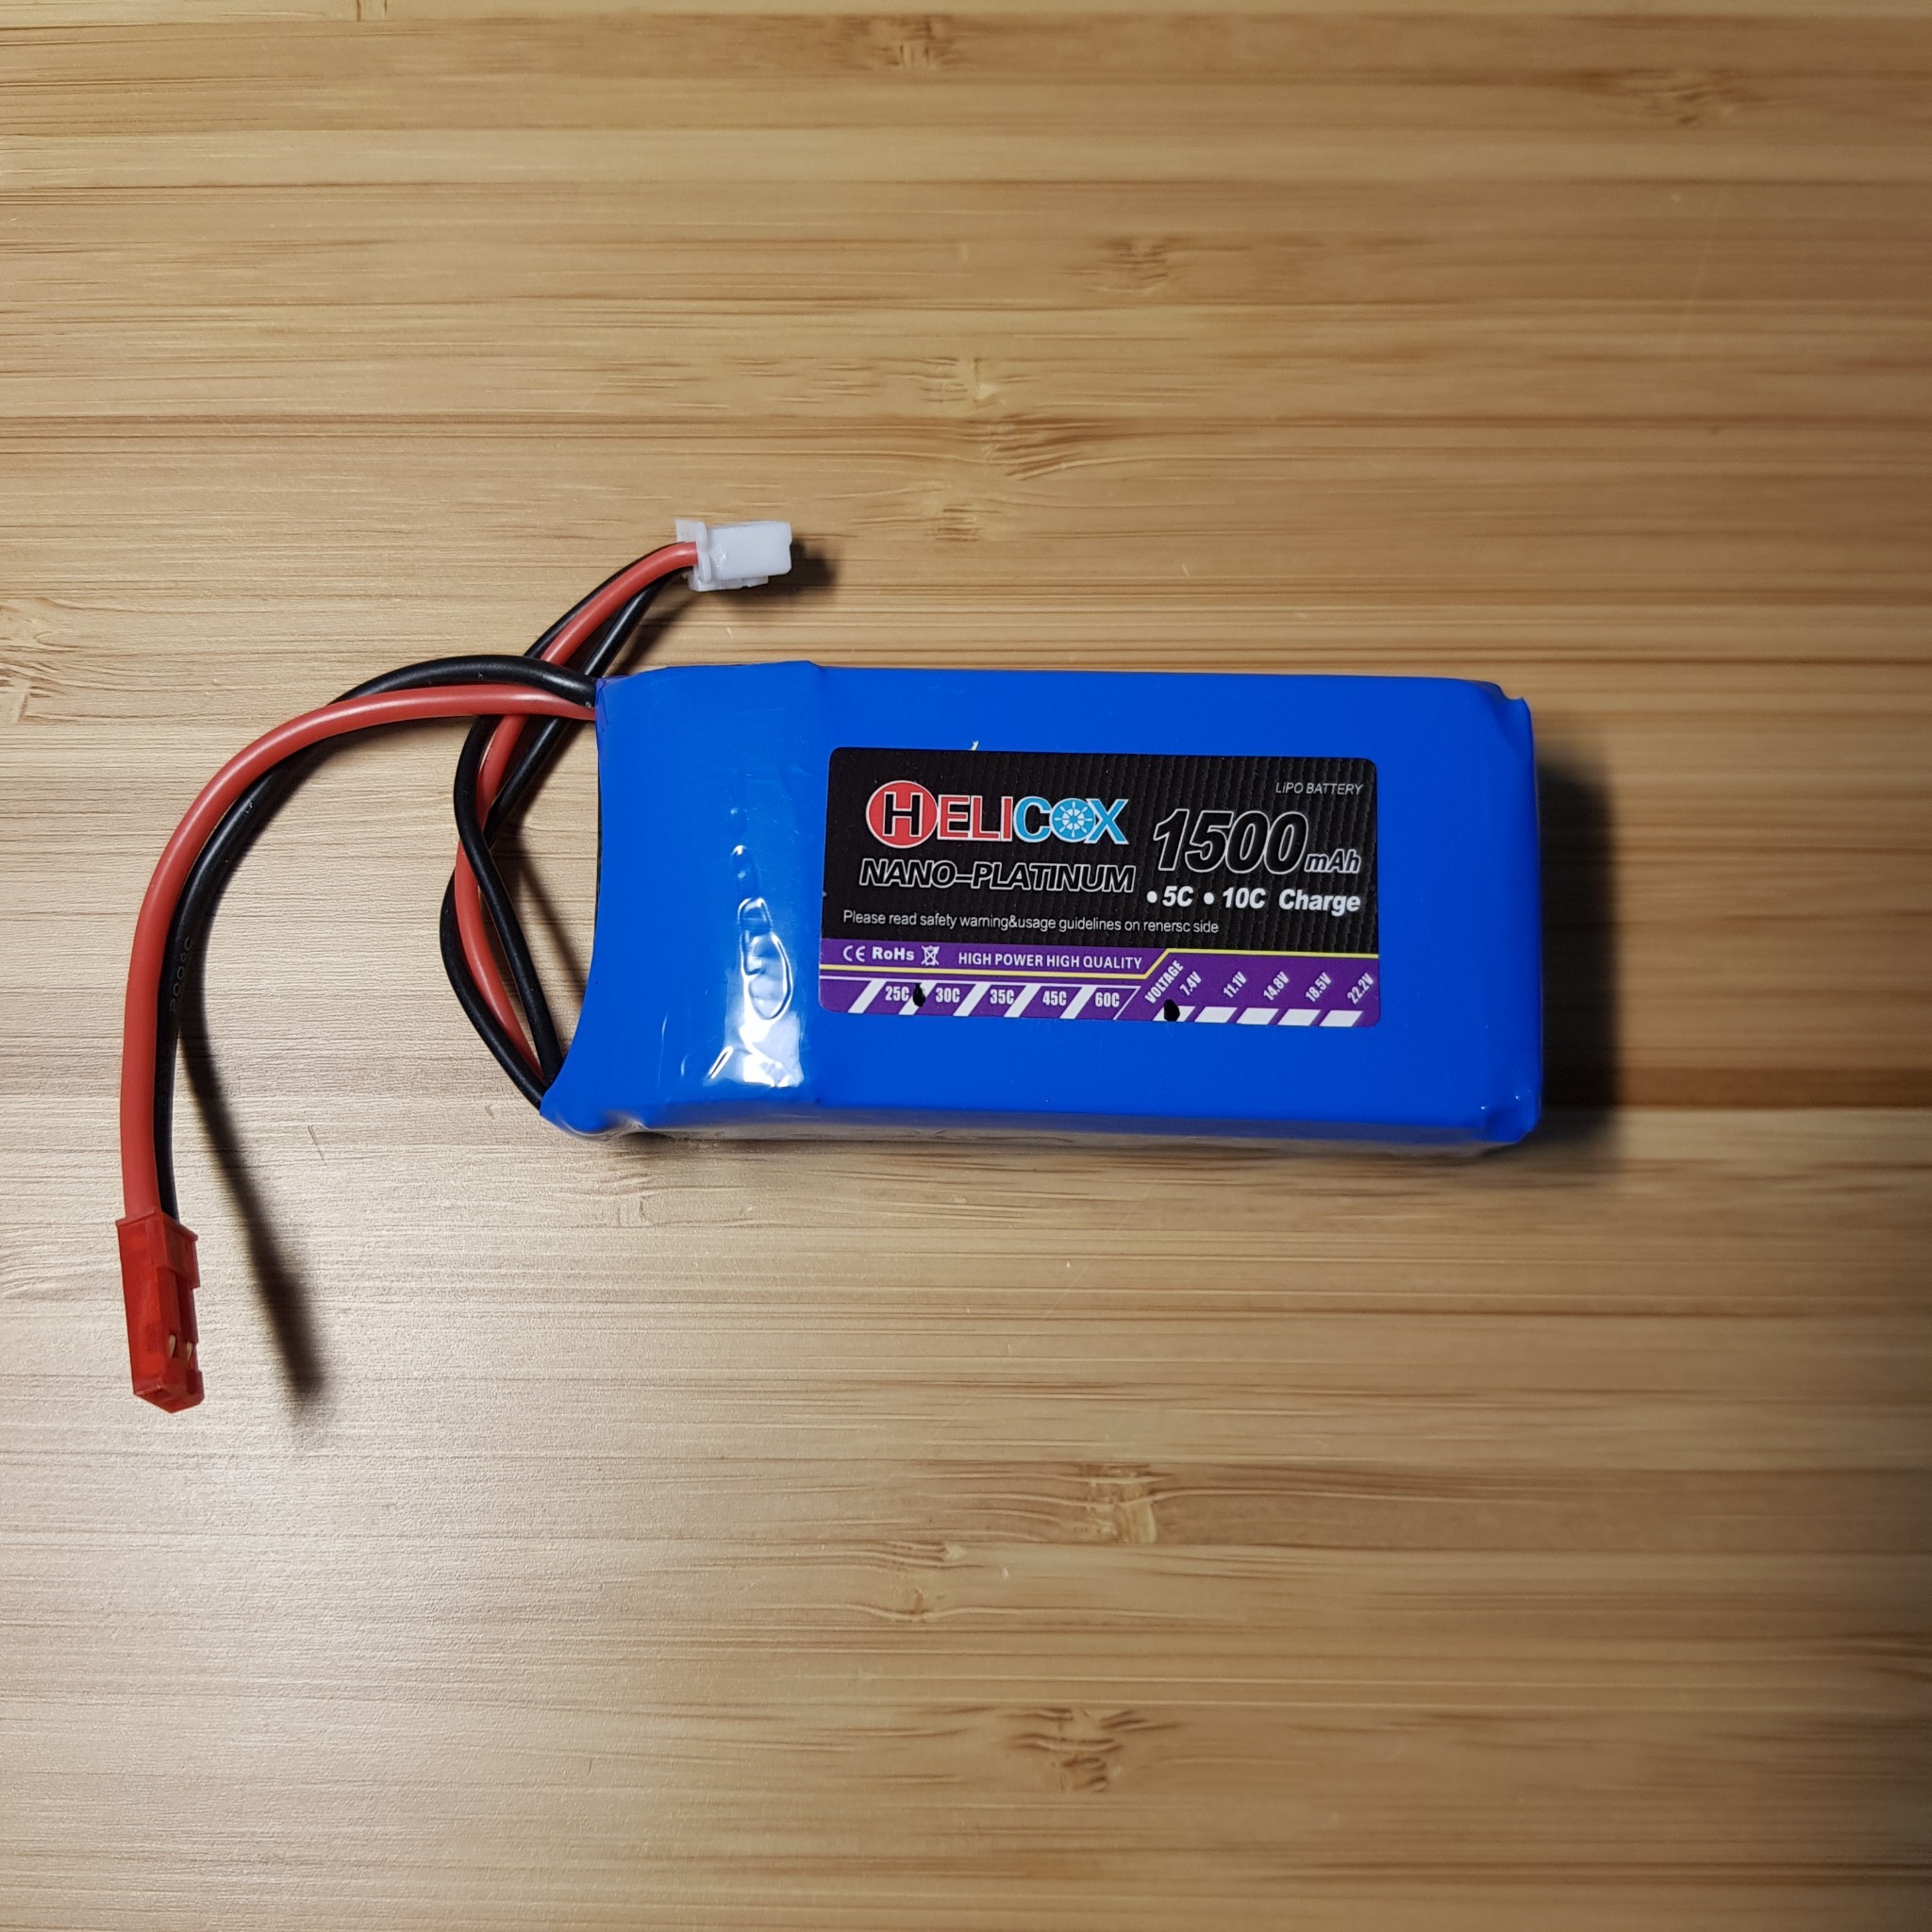 แบตเตอรี่ลิโพ​ Helicox 2S 7.4V 1500mAh แจ๊ค​แดง Battery Lipo 2S 7.4 V 1500 mAh สำหรับ​ของเล่น​บังคับ